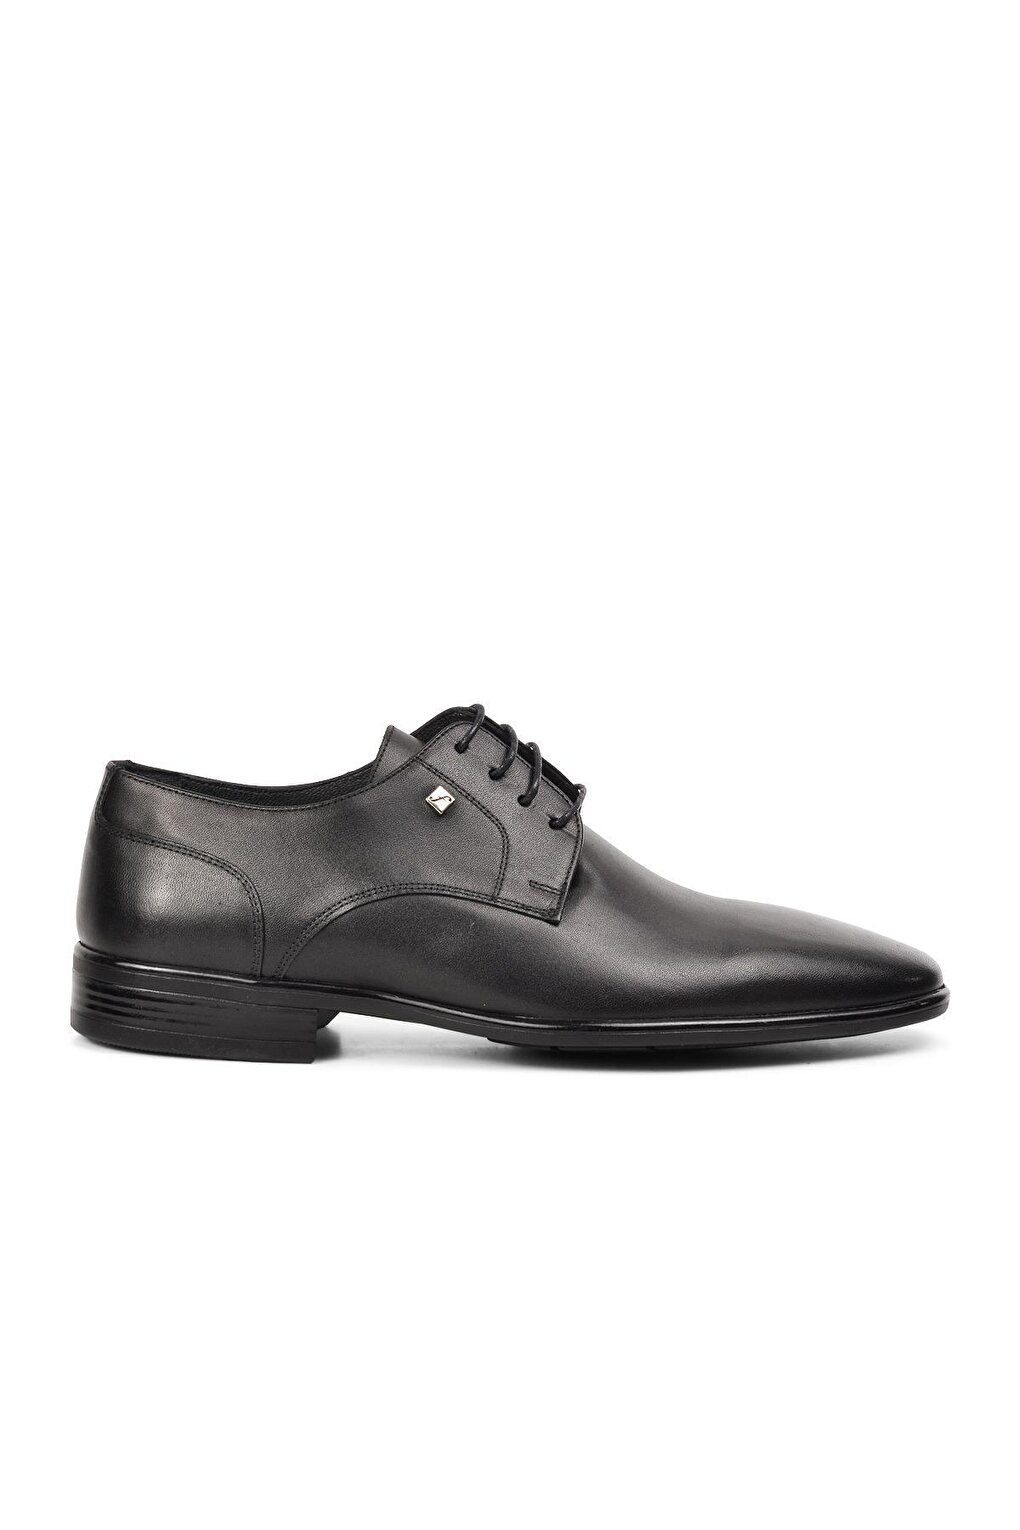 Черные мужские классические туфли из натуральной кожи на шнуровке 2806 Fosco